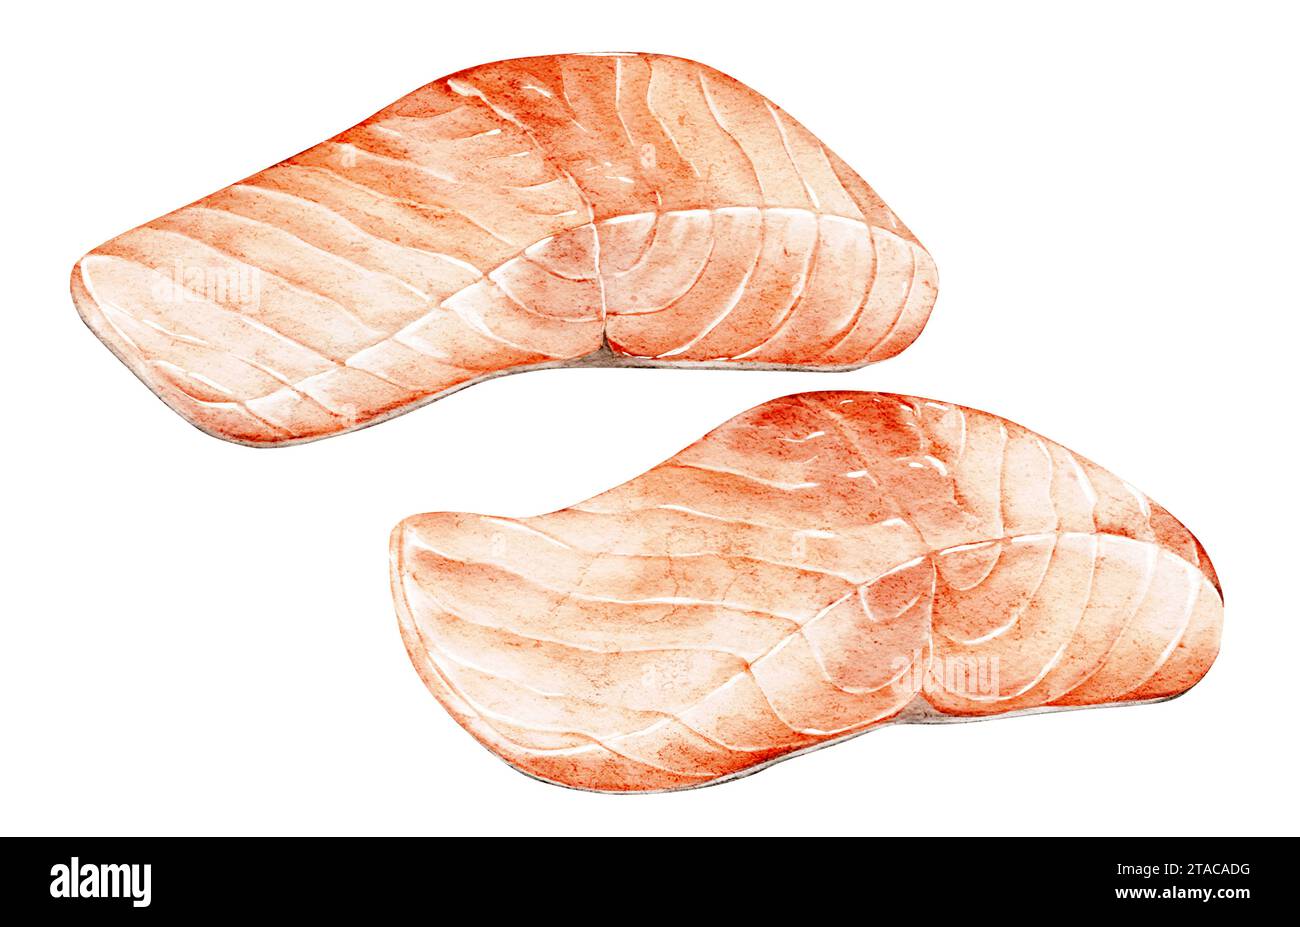 Steak de saumon frais à l'aquarelle. Couper du poisson. Illustration de nourriture dessinée à la main. Concept de mode de vie sain. Pour menu, livre de cuisine, emballage, enseigne, marché Banque D'Images